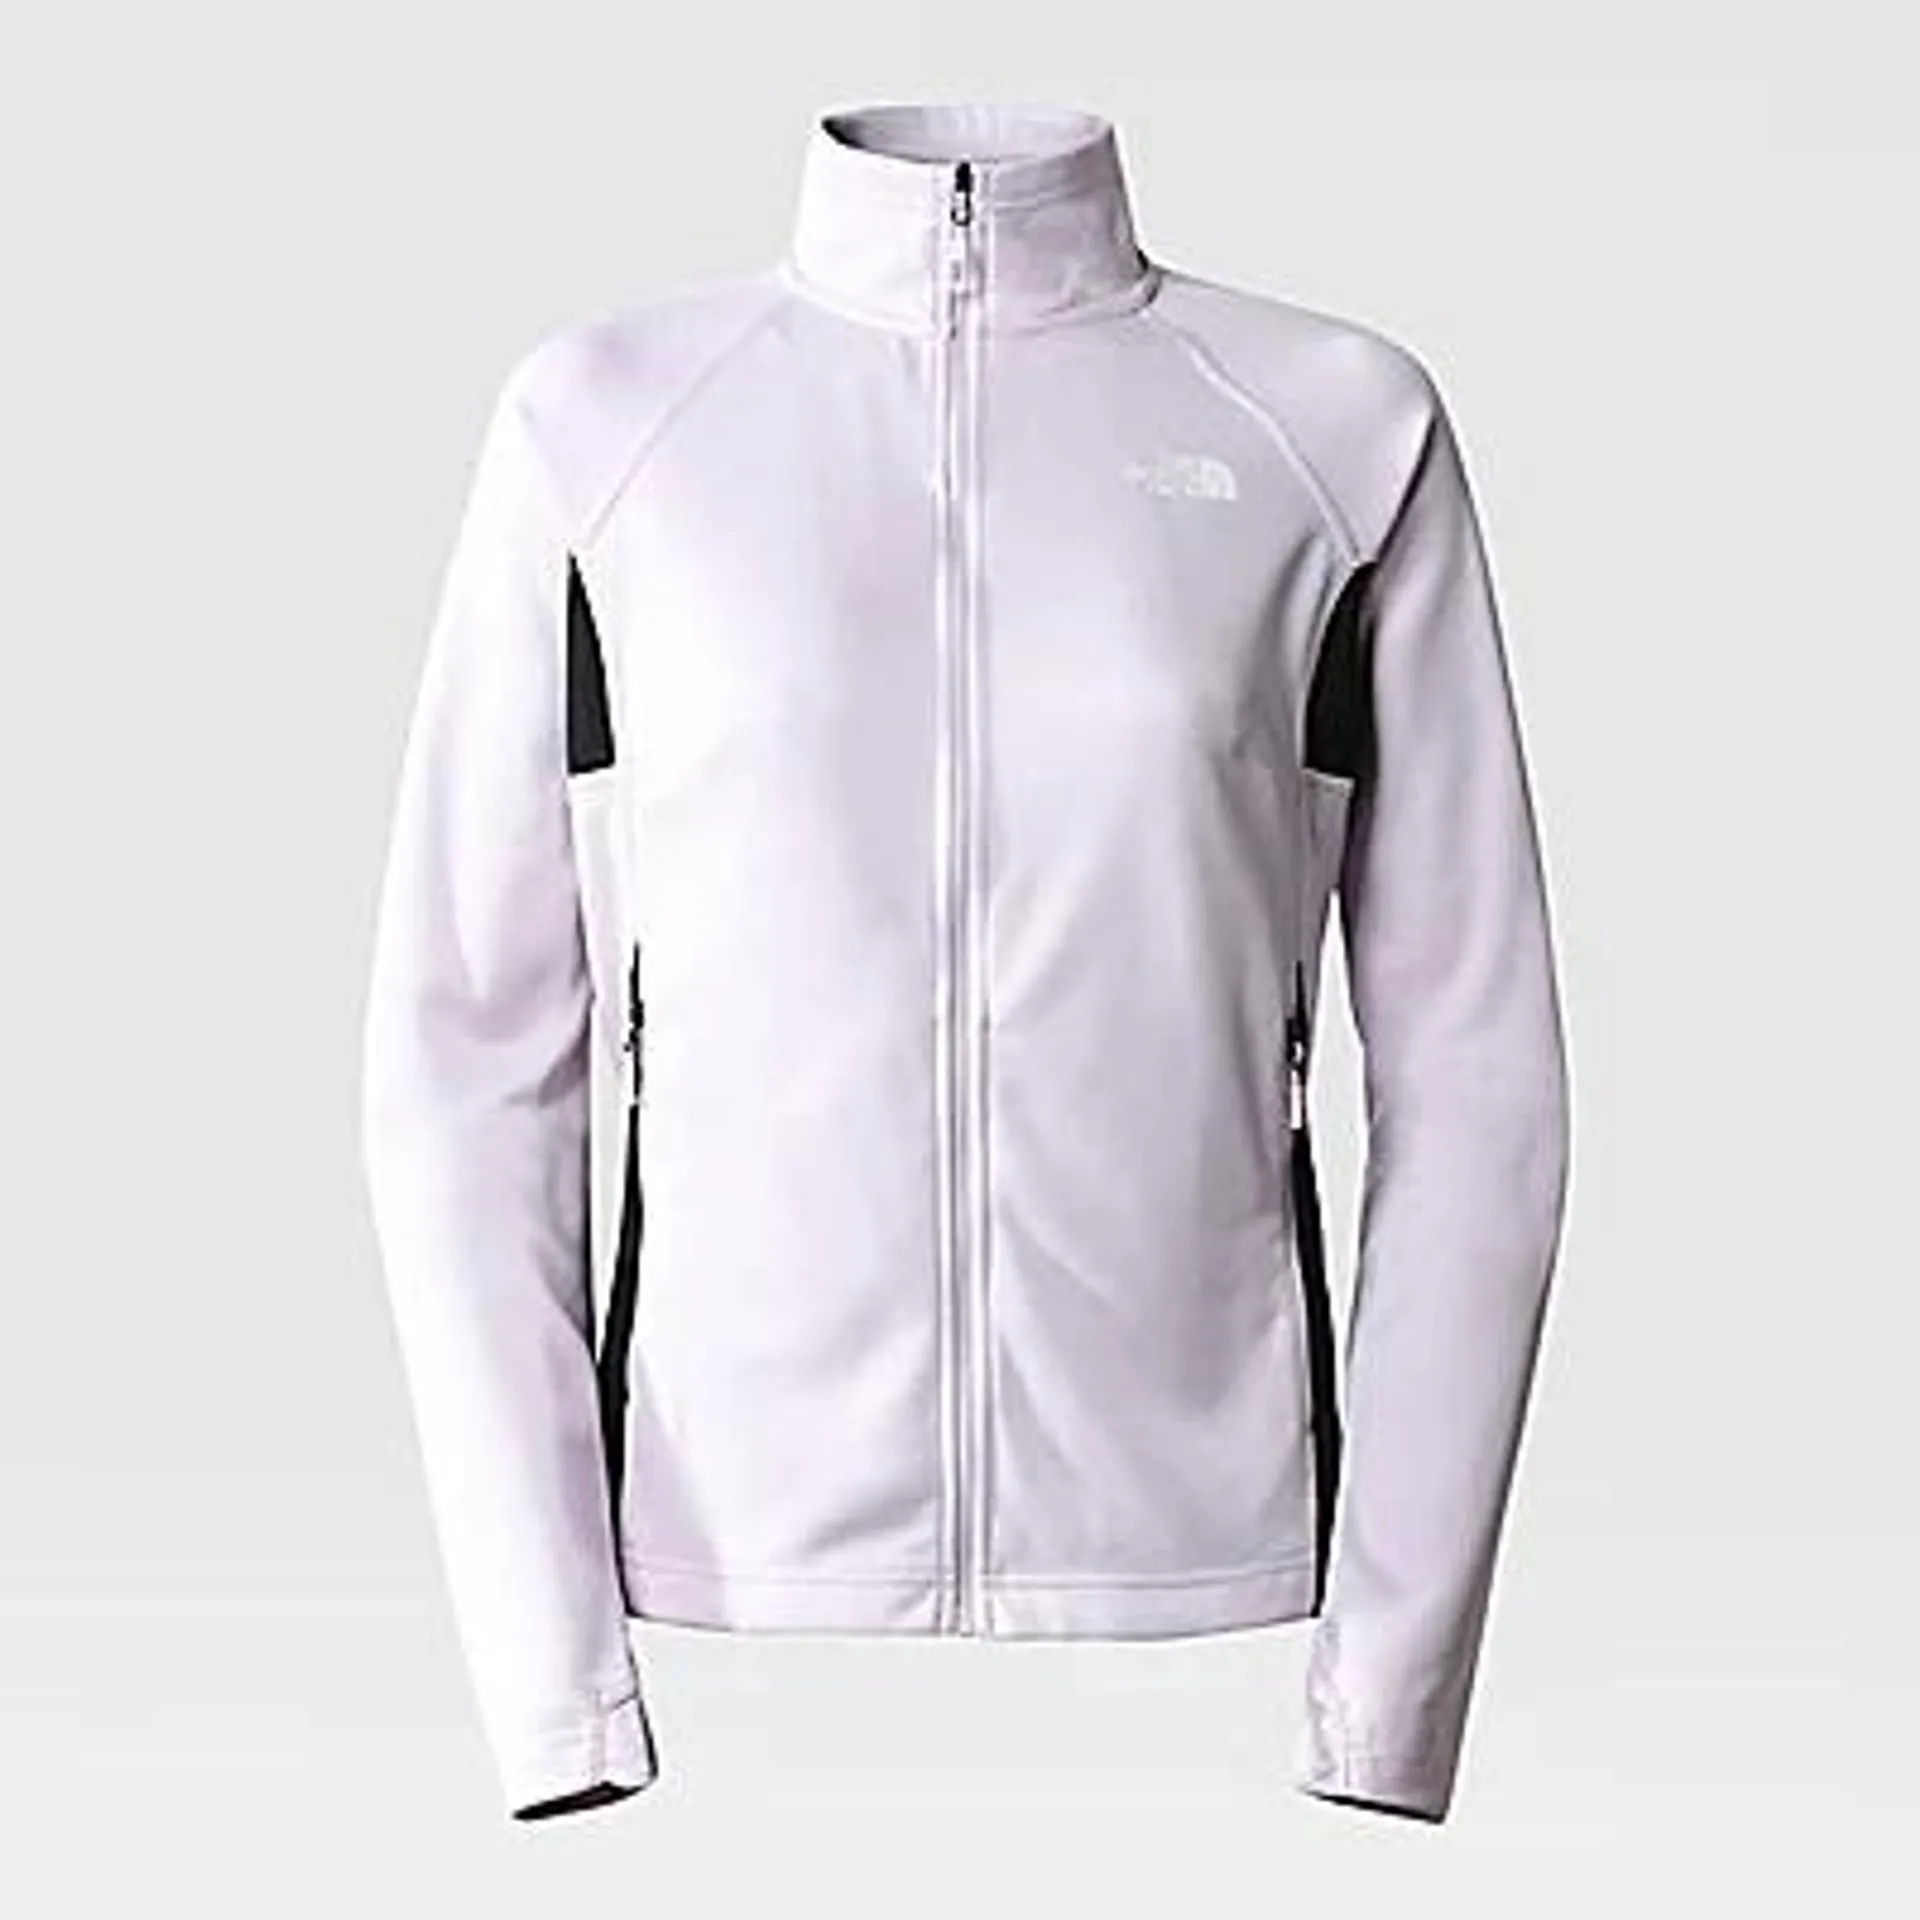 Women's Athletic Outdoor Full-Zip Midlayer Jacket